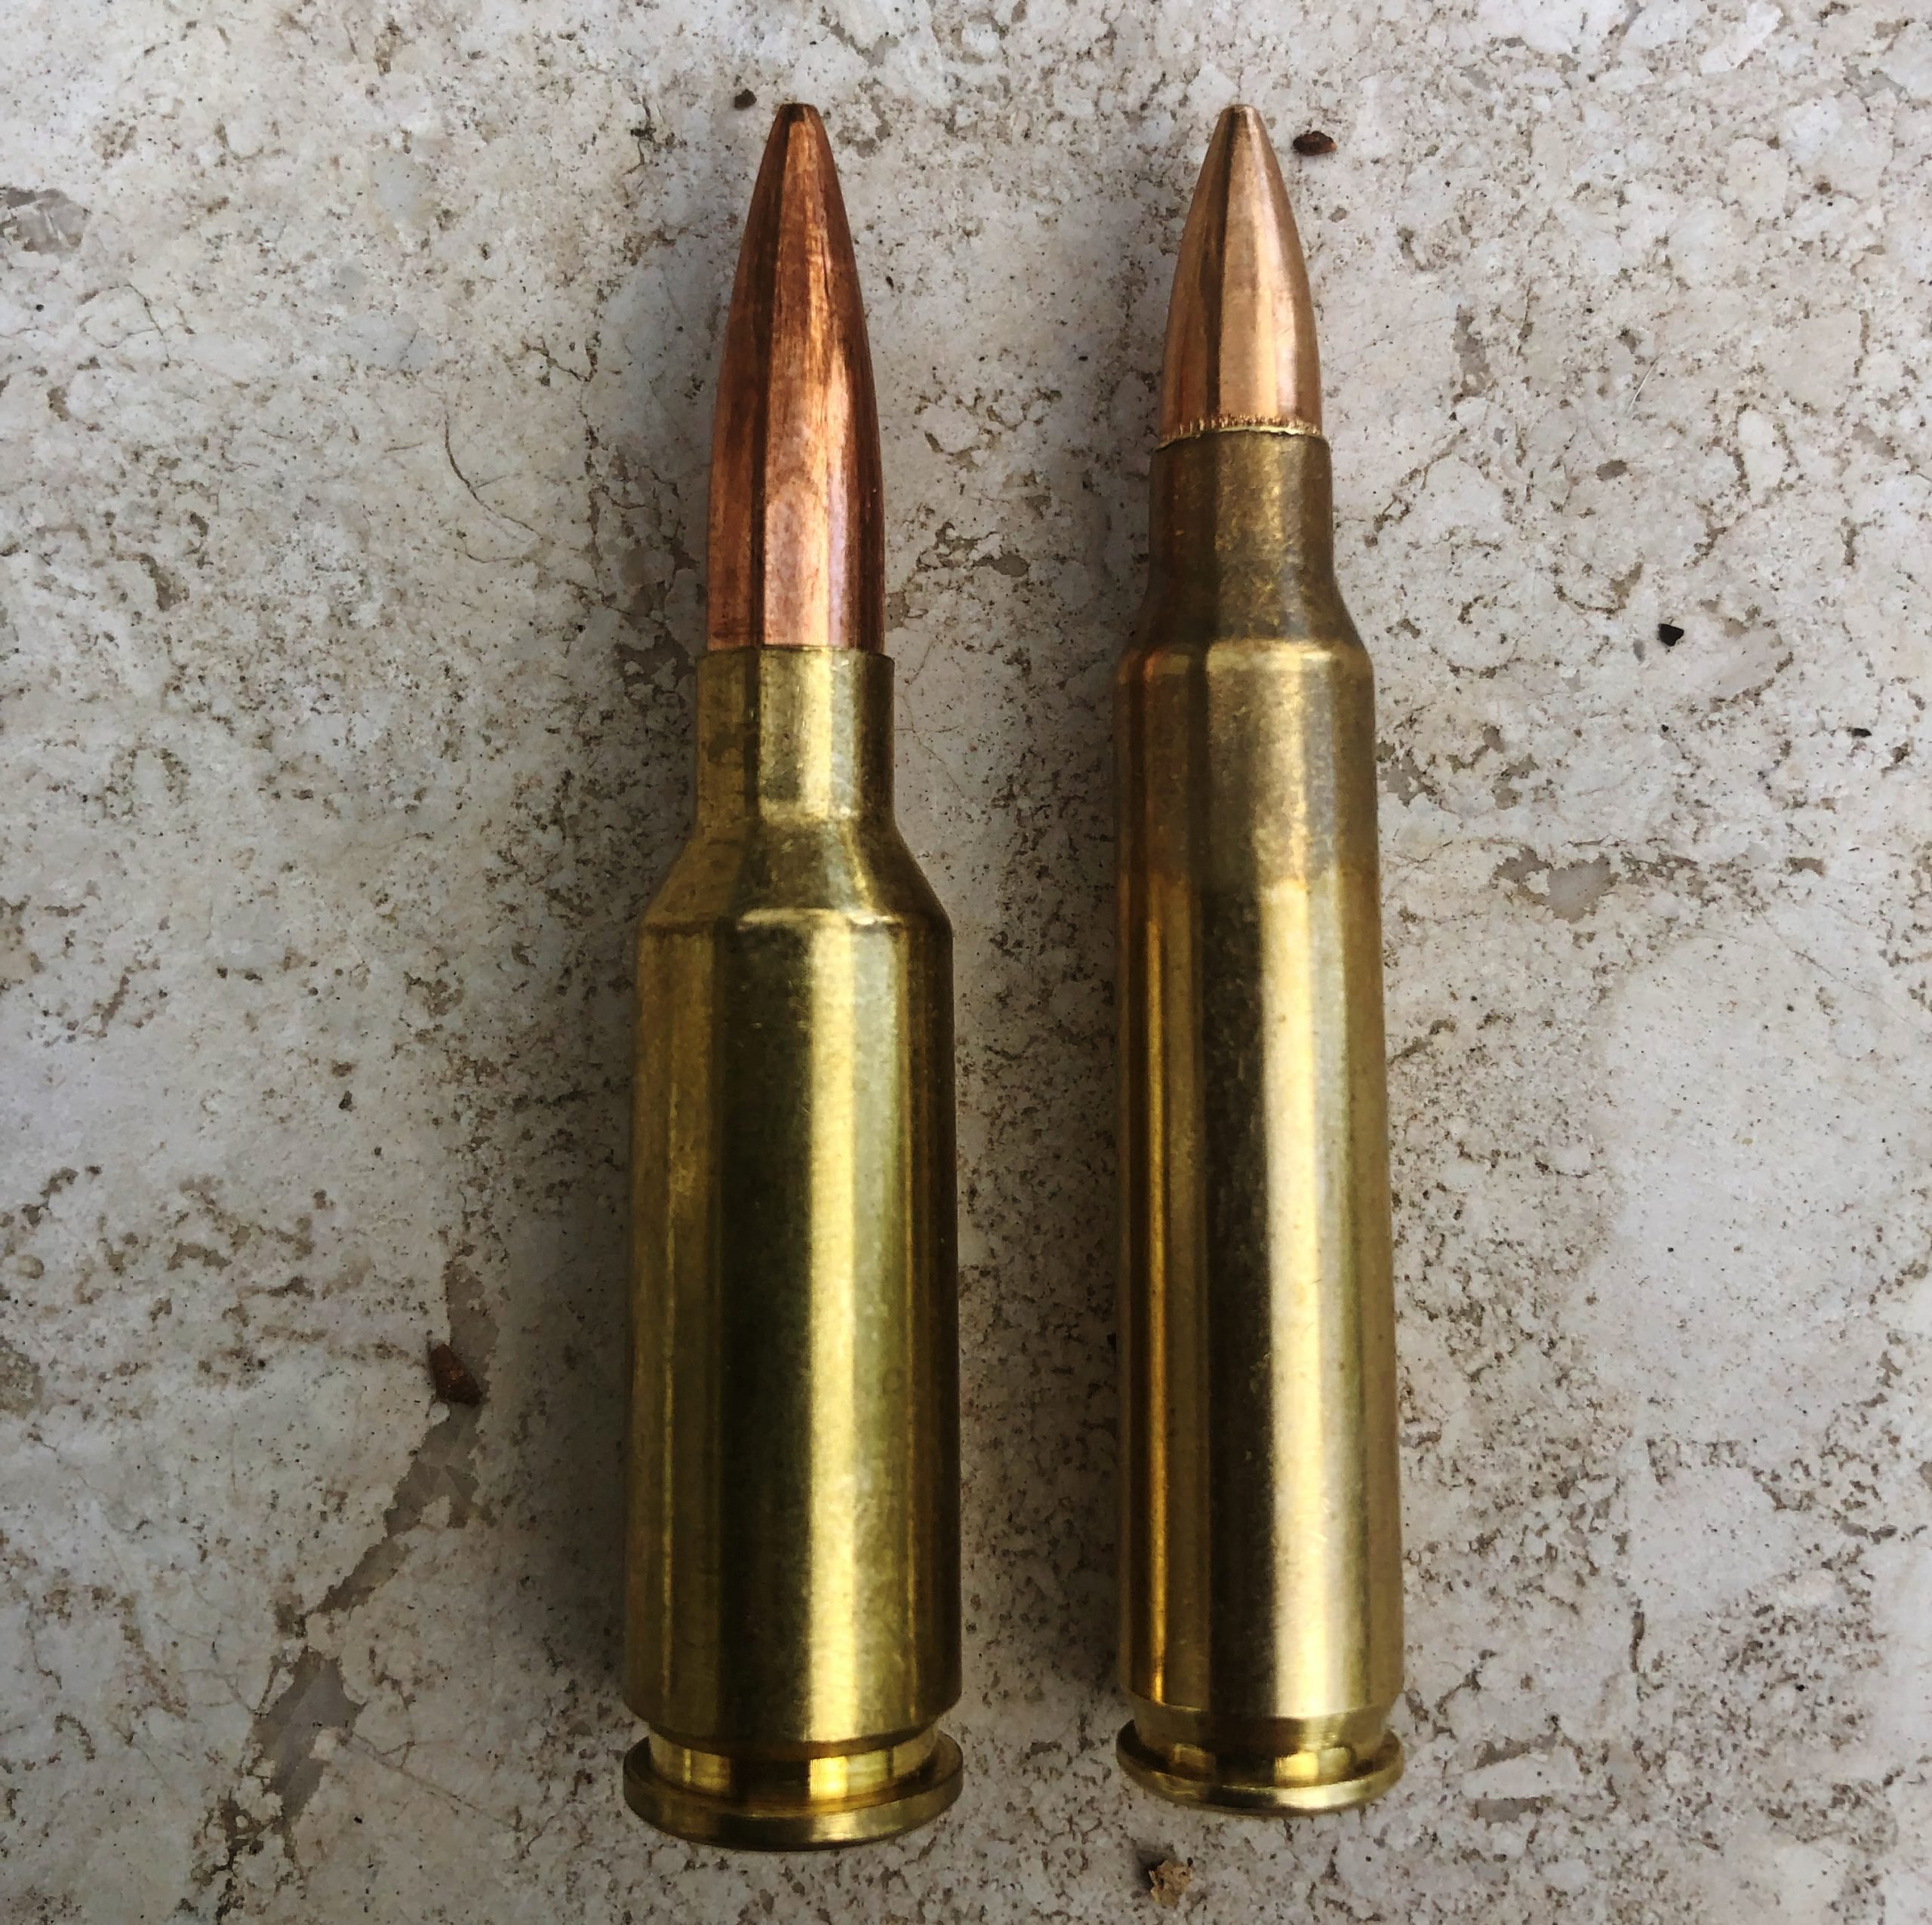 6mm ARC cartridge comparison